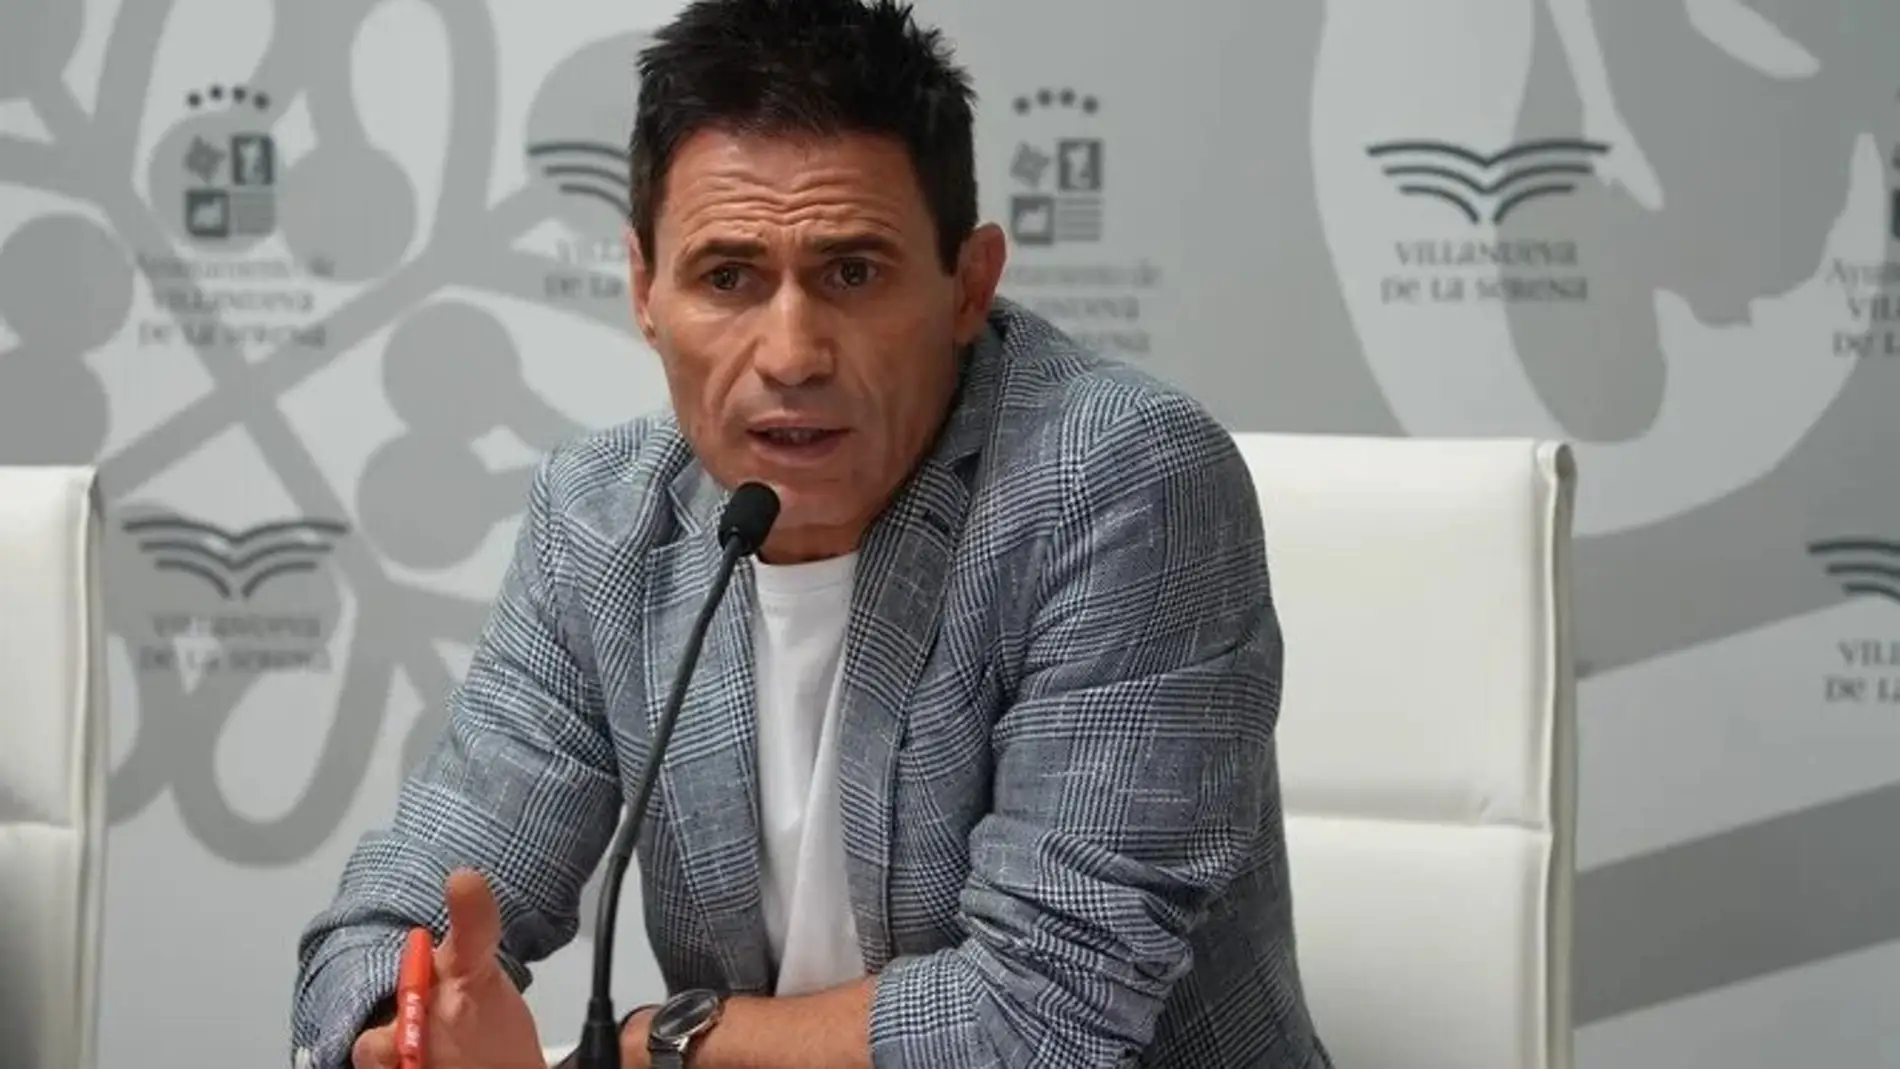 El concejal villanovense Luis Solís renuncia tras nueve meses 